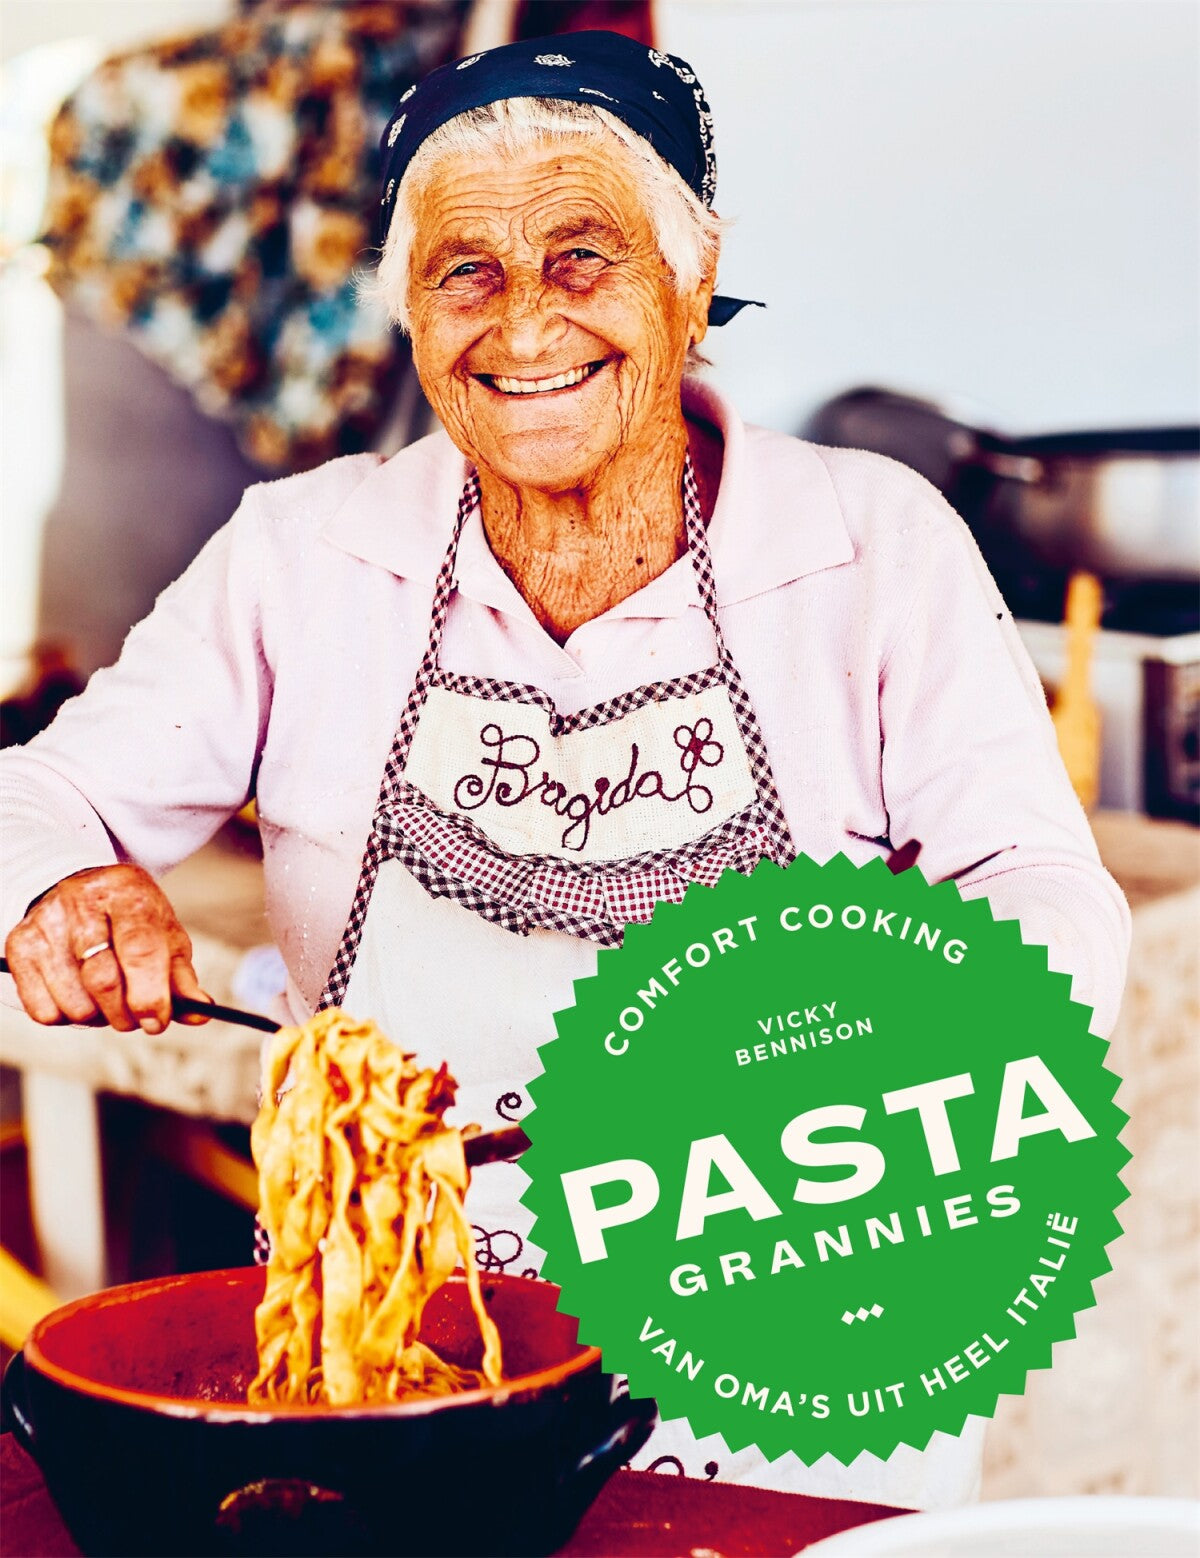 Pasta grannies - comfort cooking